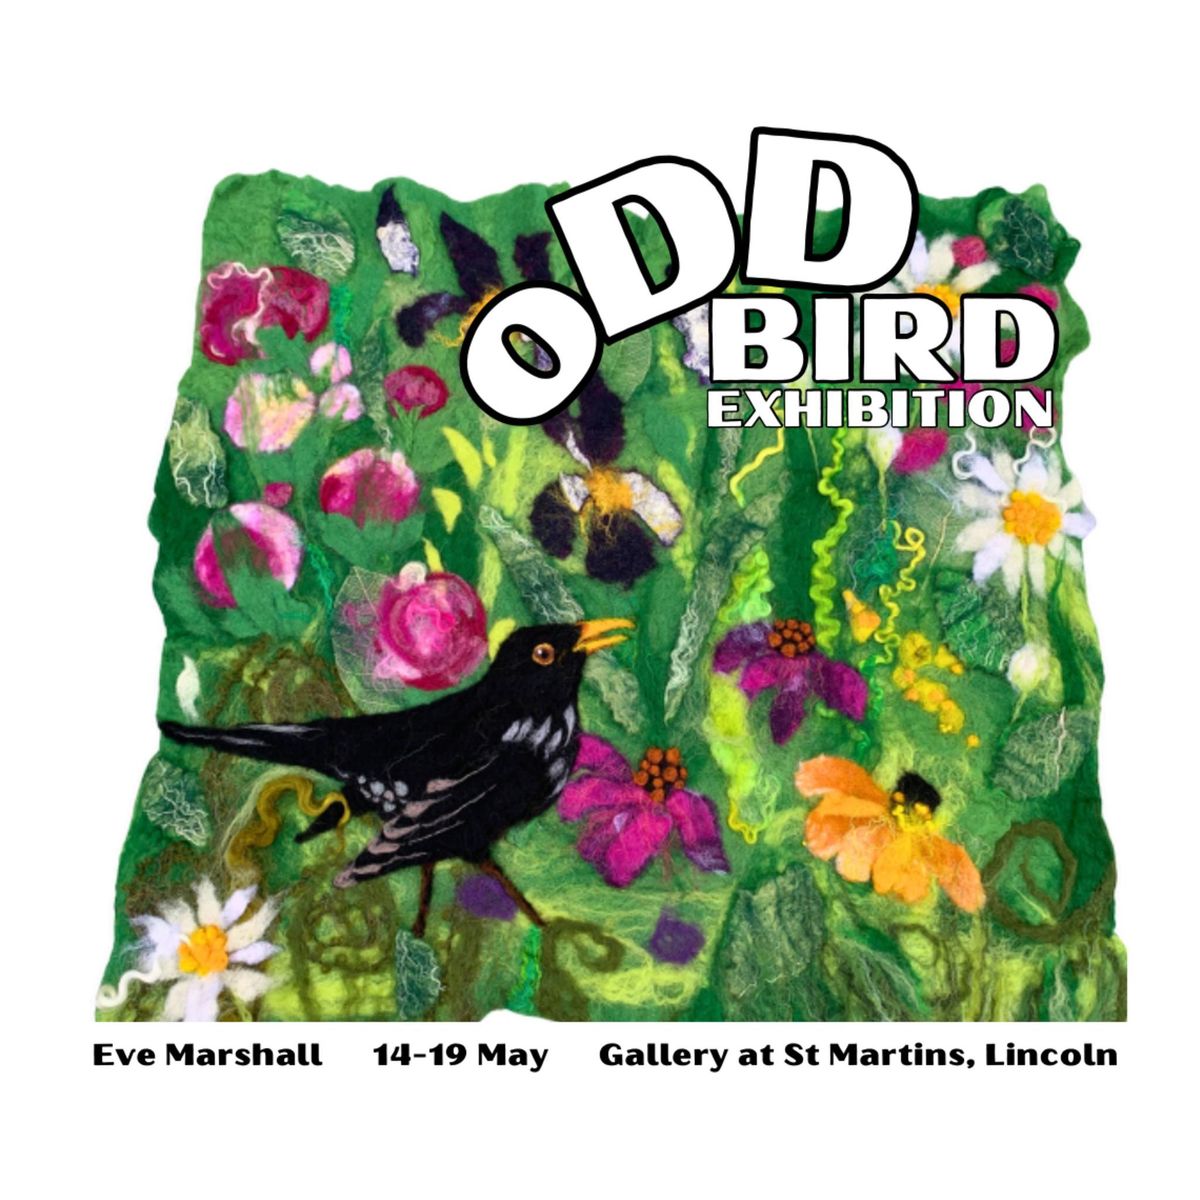 Odd Bird Exhibition